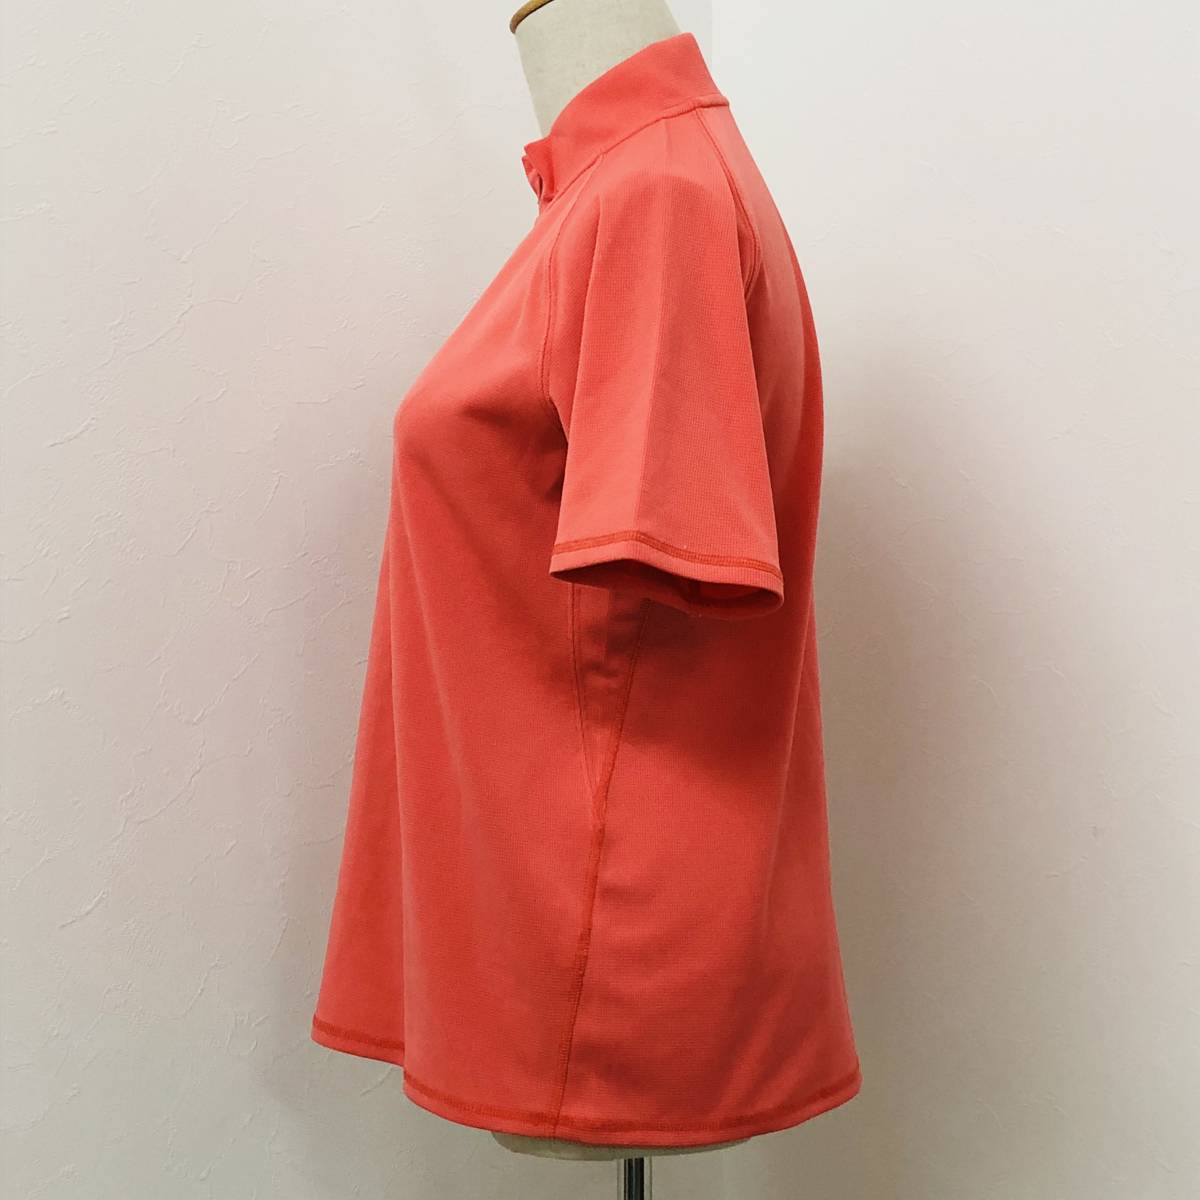 a01626 прекрасный товар MIZUNO Mizuno рубашка-поло короткий рукав с высоким воротником половина Zip M розовый серия orange серия женский активный одежда спорт ko-te